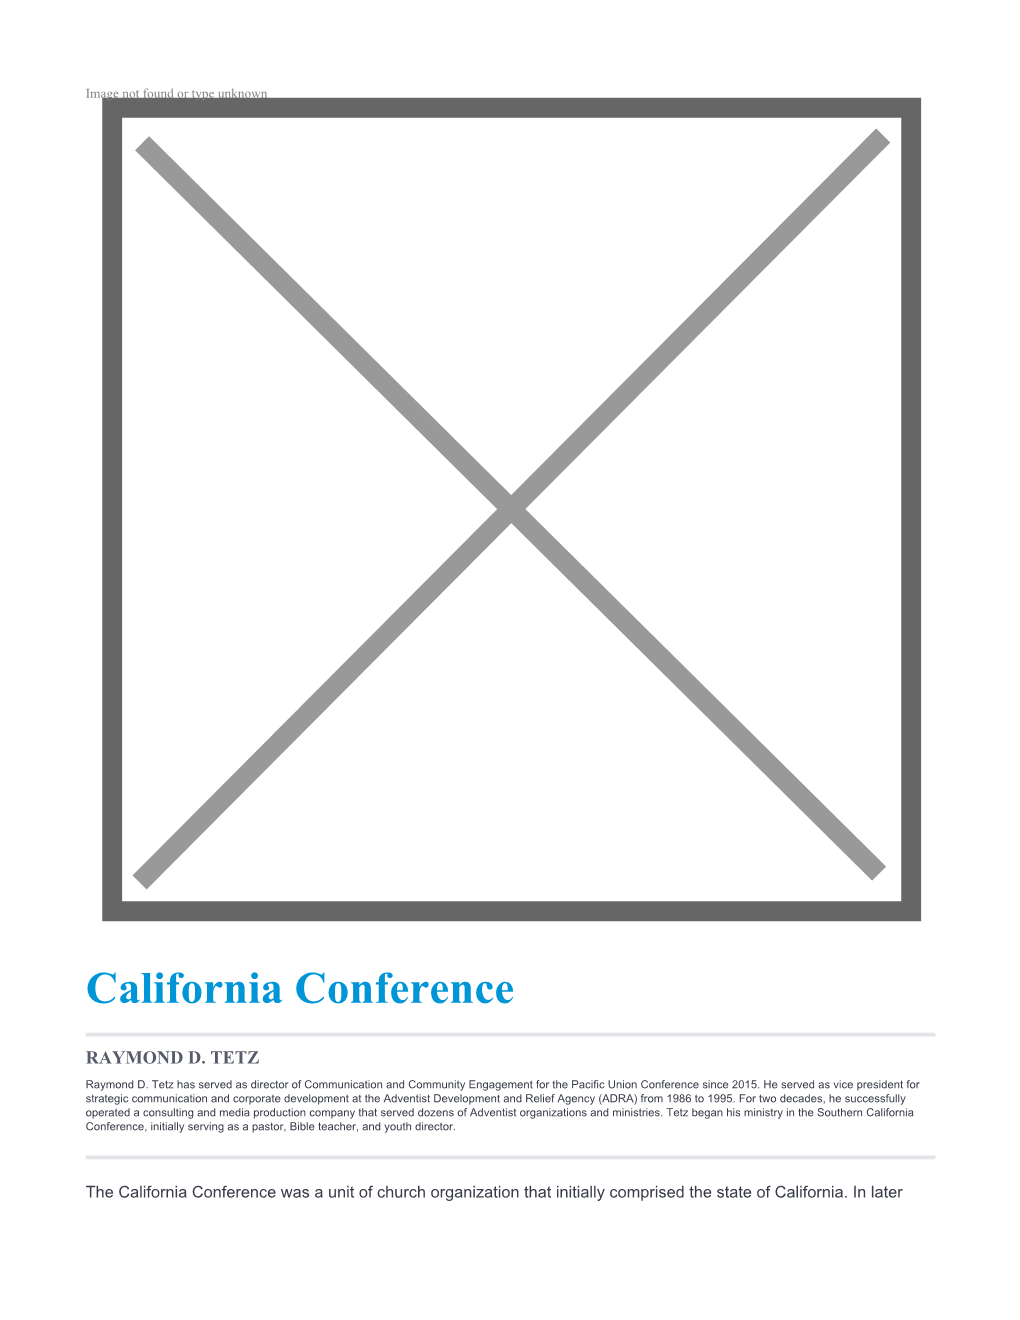 California Conference